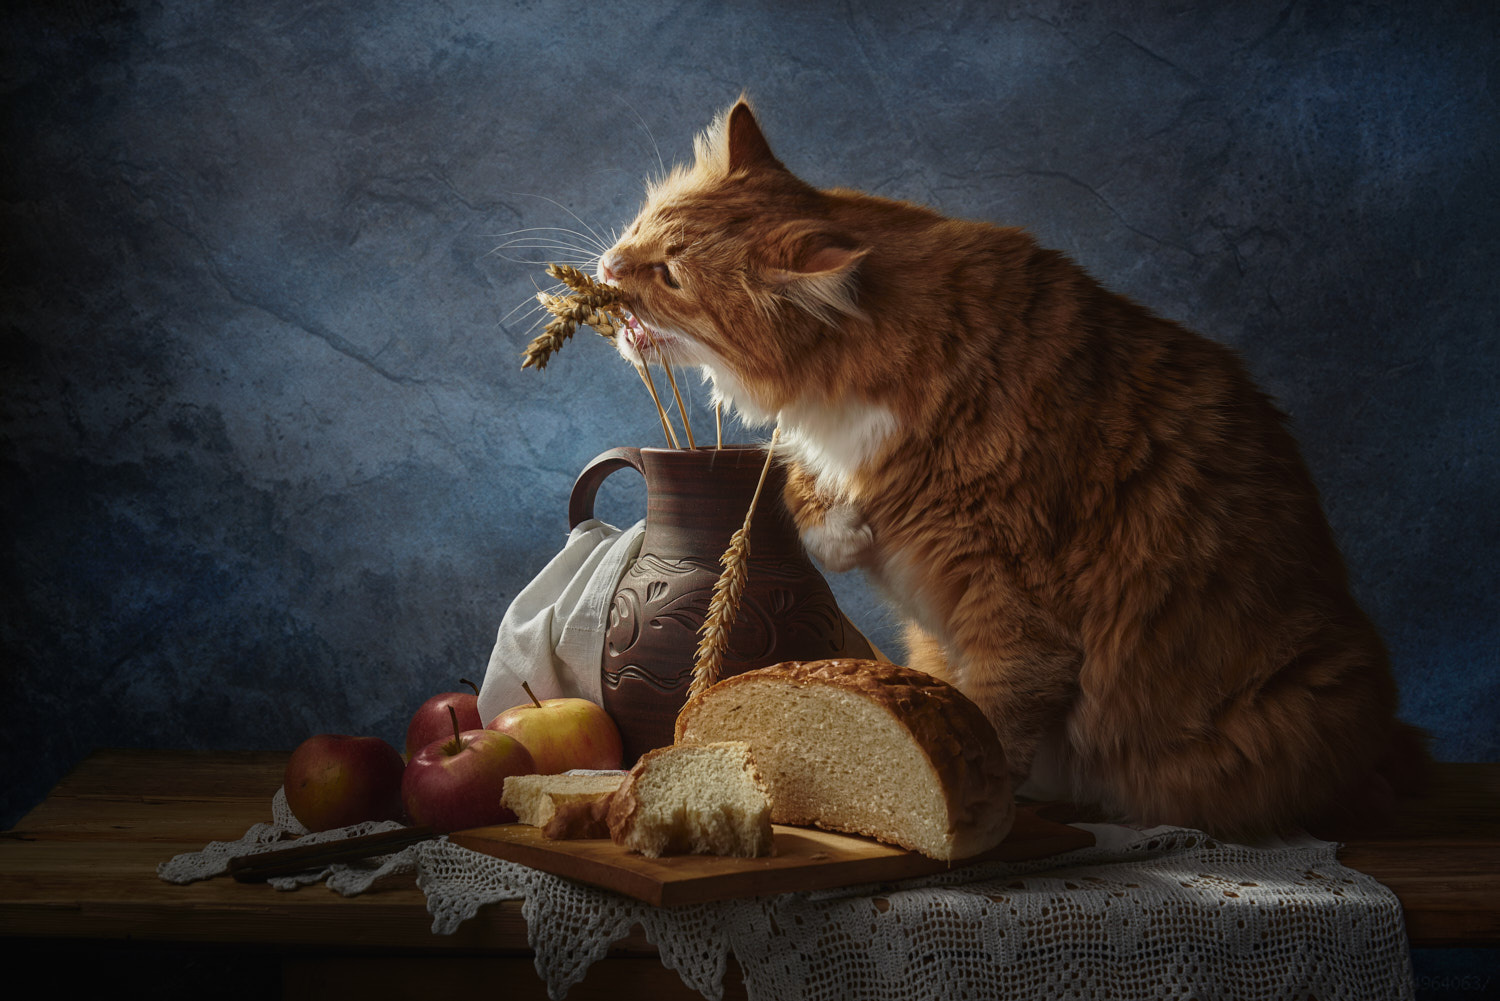 Вкусные колоски натюрморт композиция постановка сцена колоски хлеб кот питомец друг рыжий